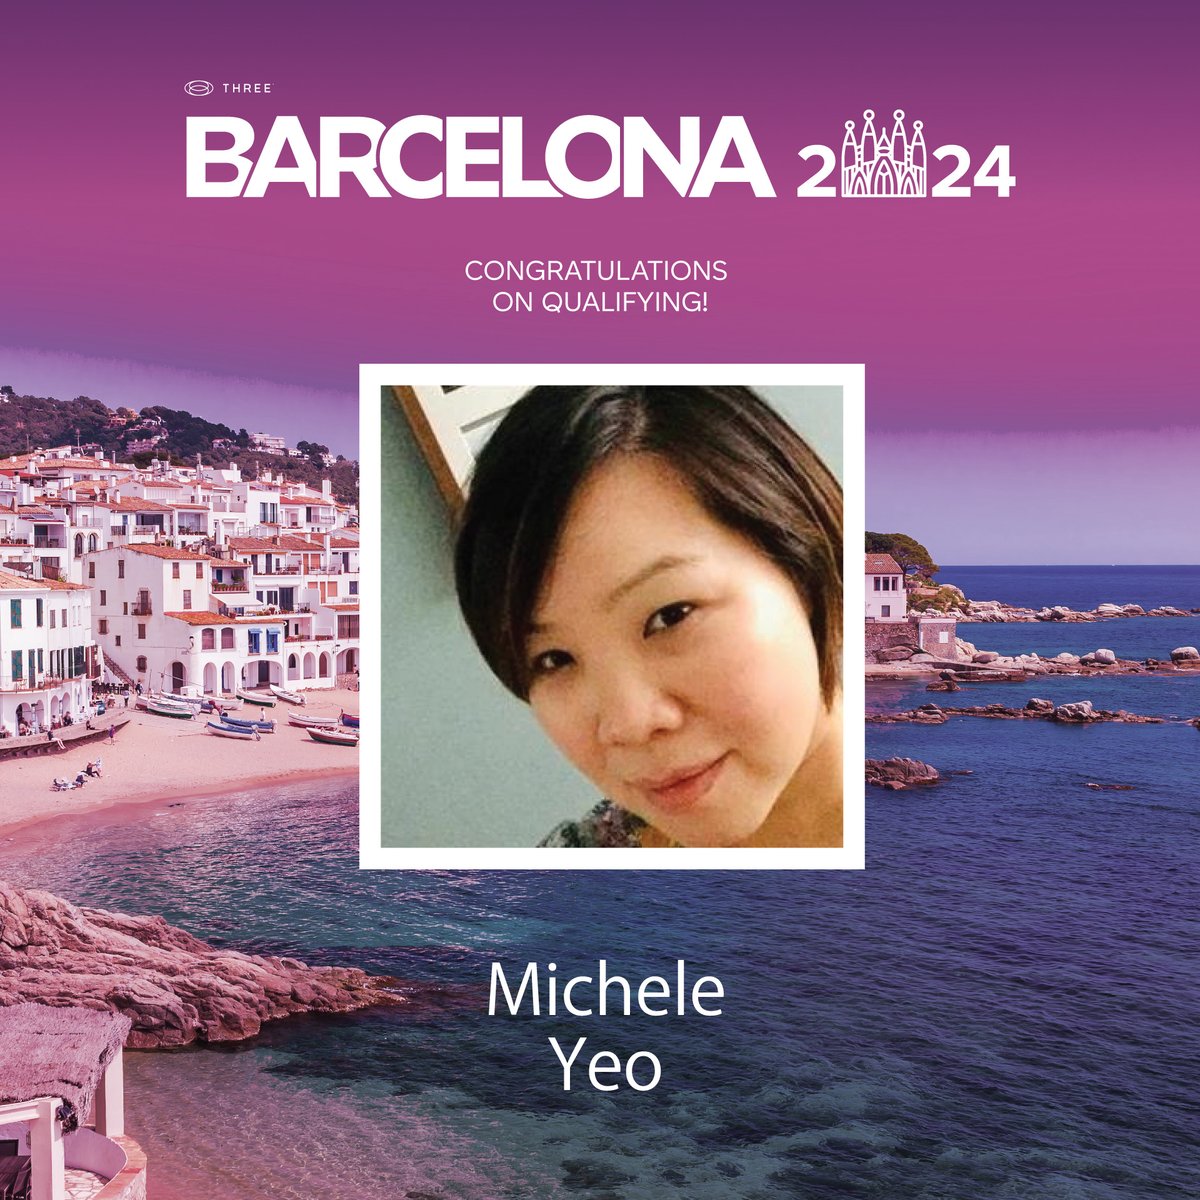 Michele-Yeo-1